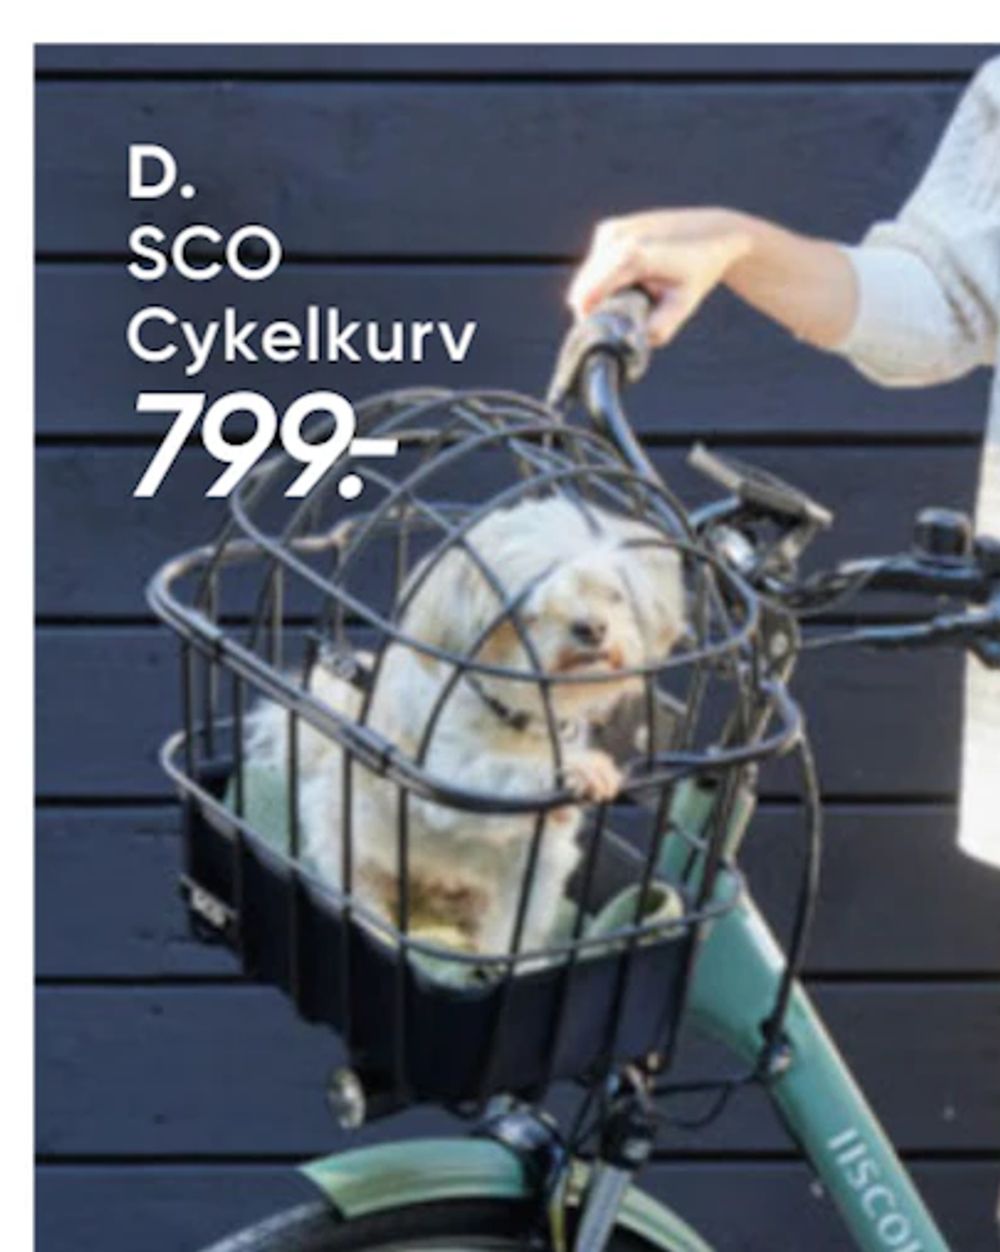 Tilbud på SCO Cykelkurv fra Bilka til 799 kr.